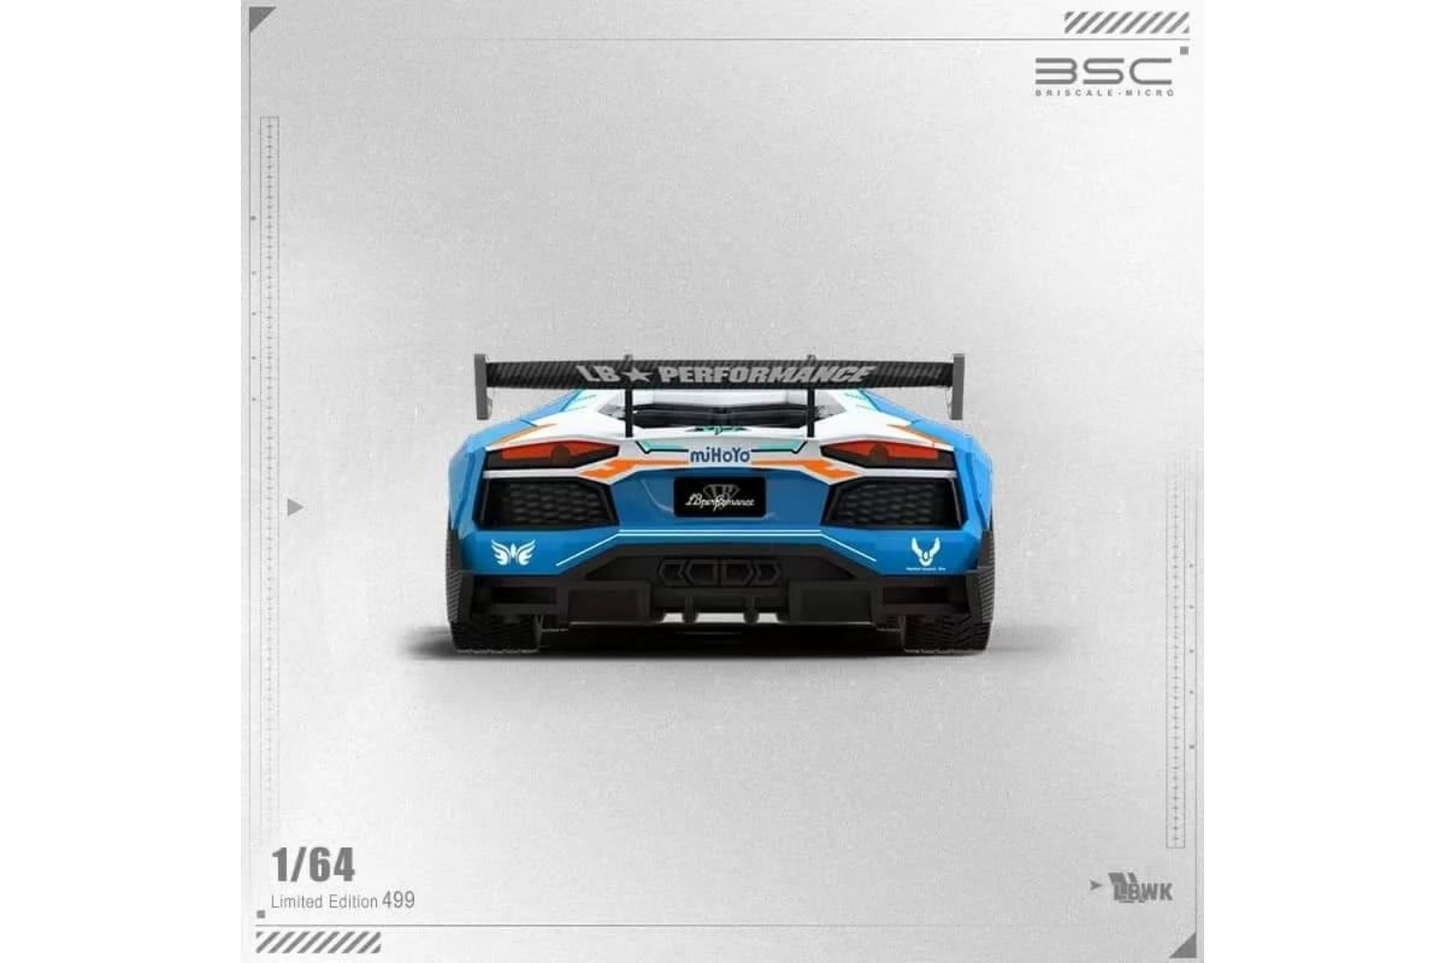 BriscaleMicro 1/64 Lamborghini Aventador LP700-4 LBWK in "Forza Motorsport Honkai 3" Livery